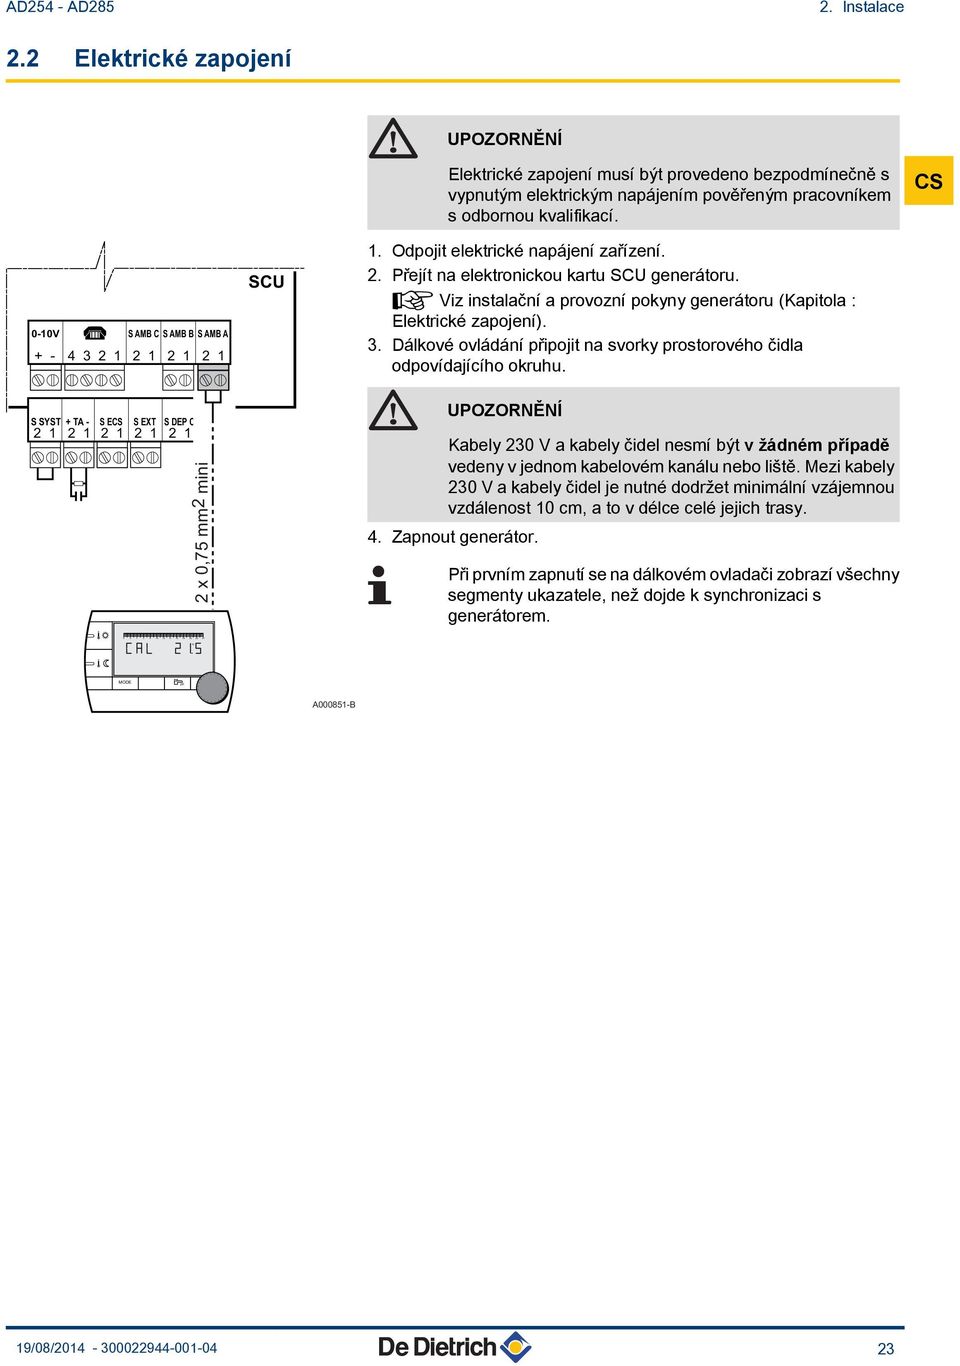 ¼ Viz instalační a provozní pokyny generátoru (Kapitola : Elektrické zapojení). 3. Dálkové ovládání připojit na svorky prostorového čidla odpovídajícího okruhu.